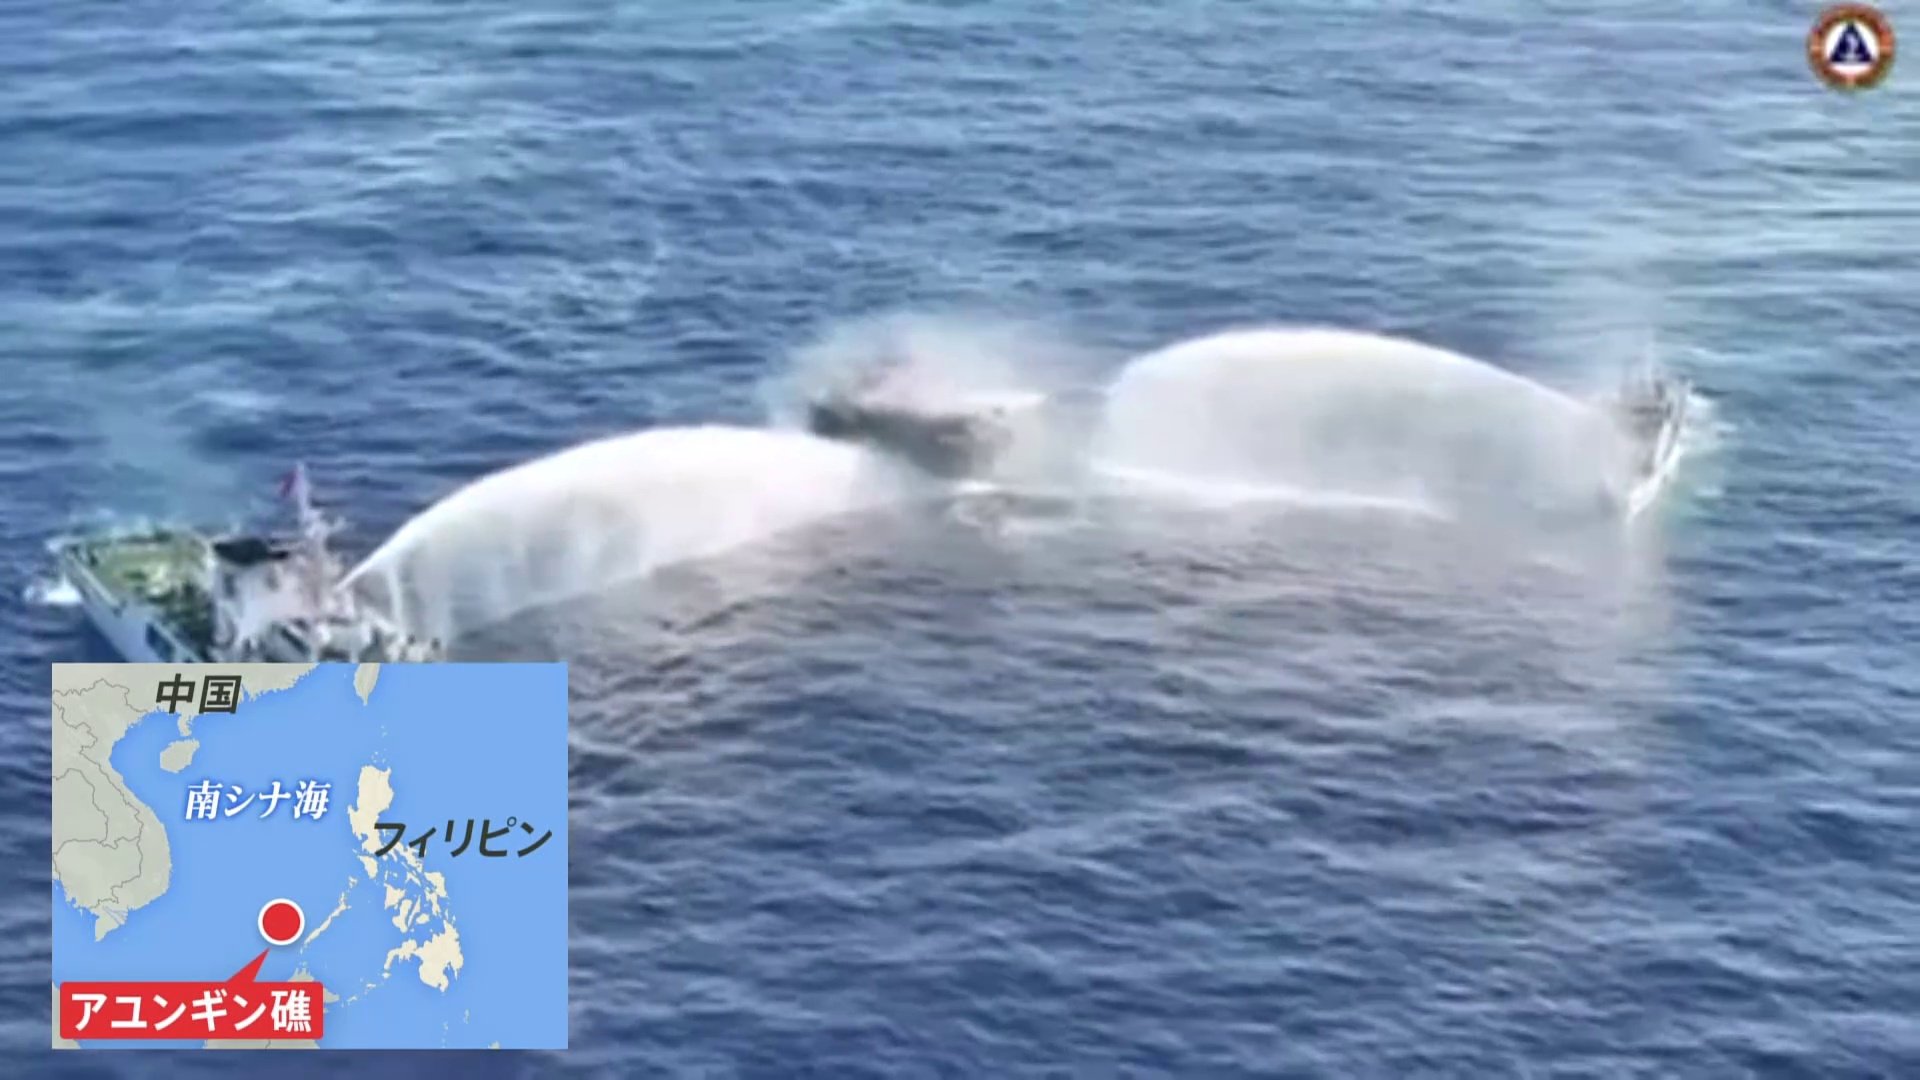 【独自】緊迫の船内映像を入手中国艦船による放水砲でフィリピン船が損傷、乗組員4人けが 領有権対立深まる南シナ海